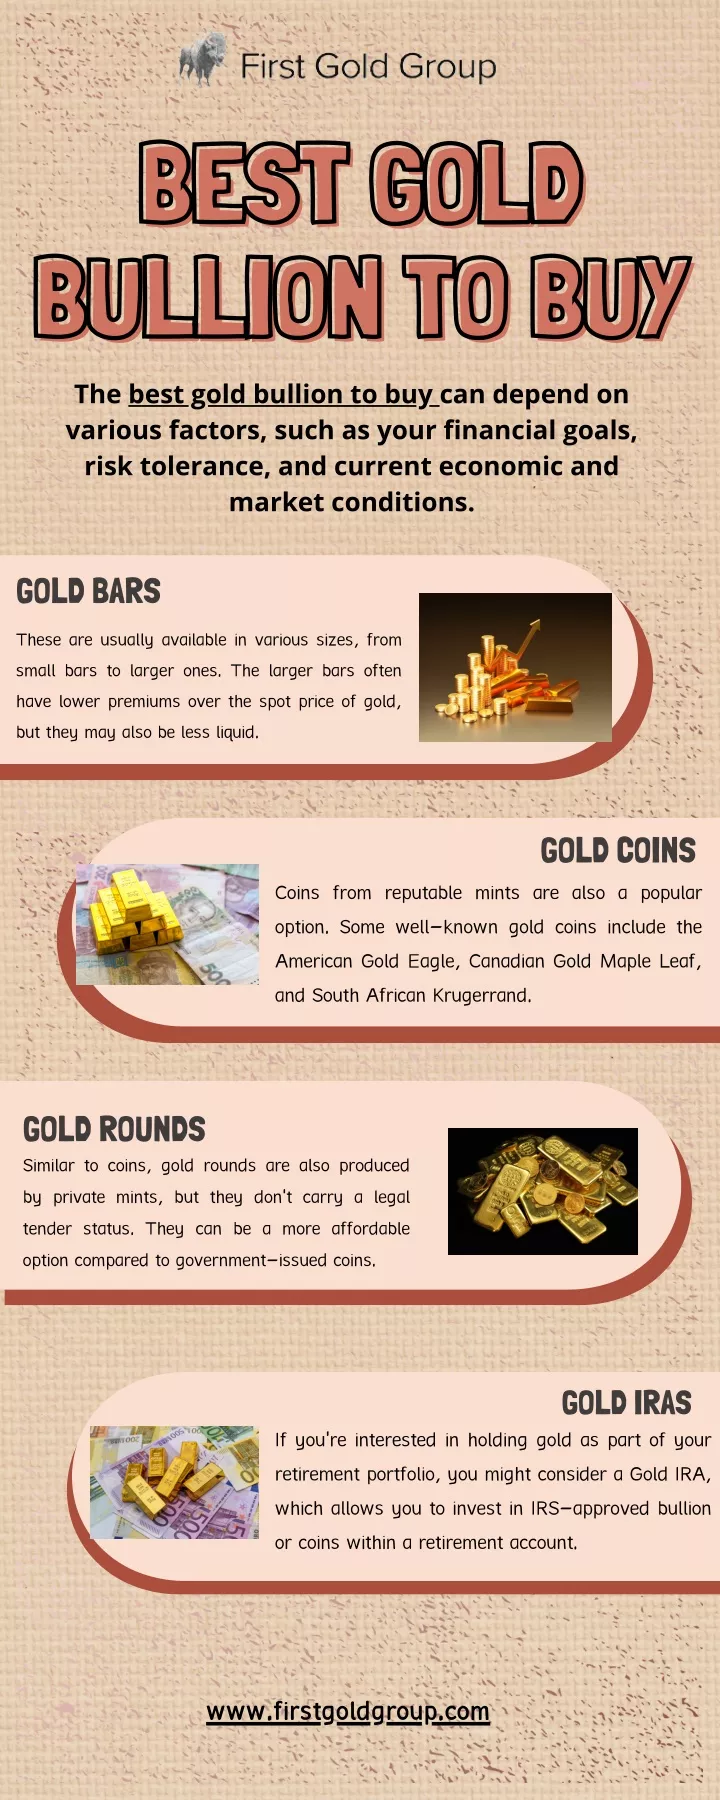 best gold best gold bullion to buy bullion